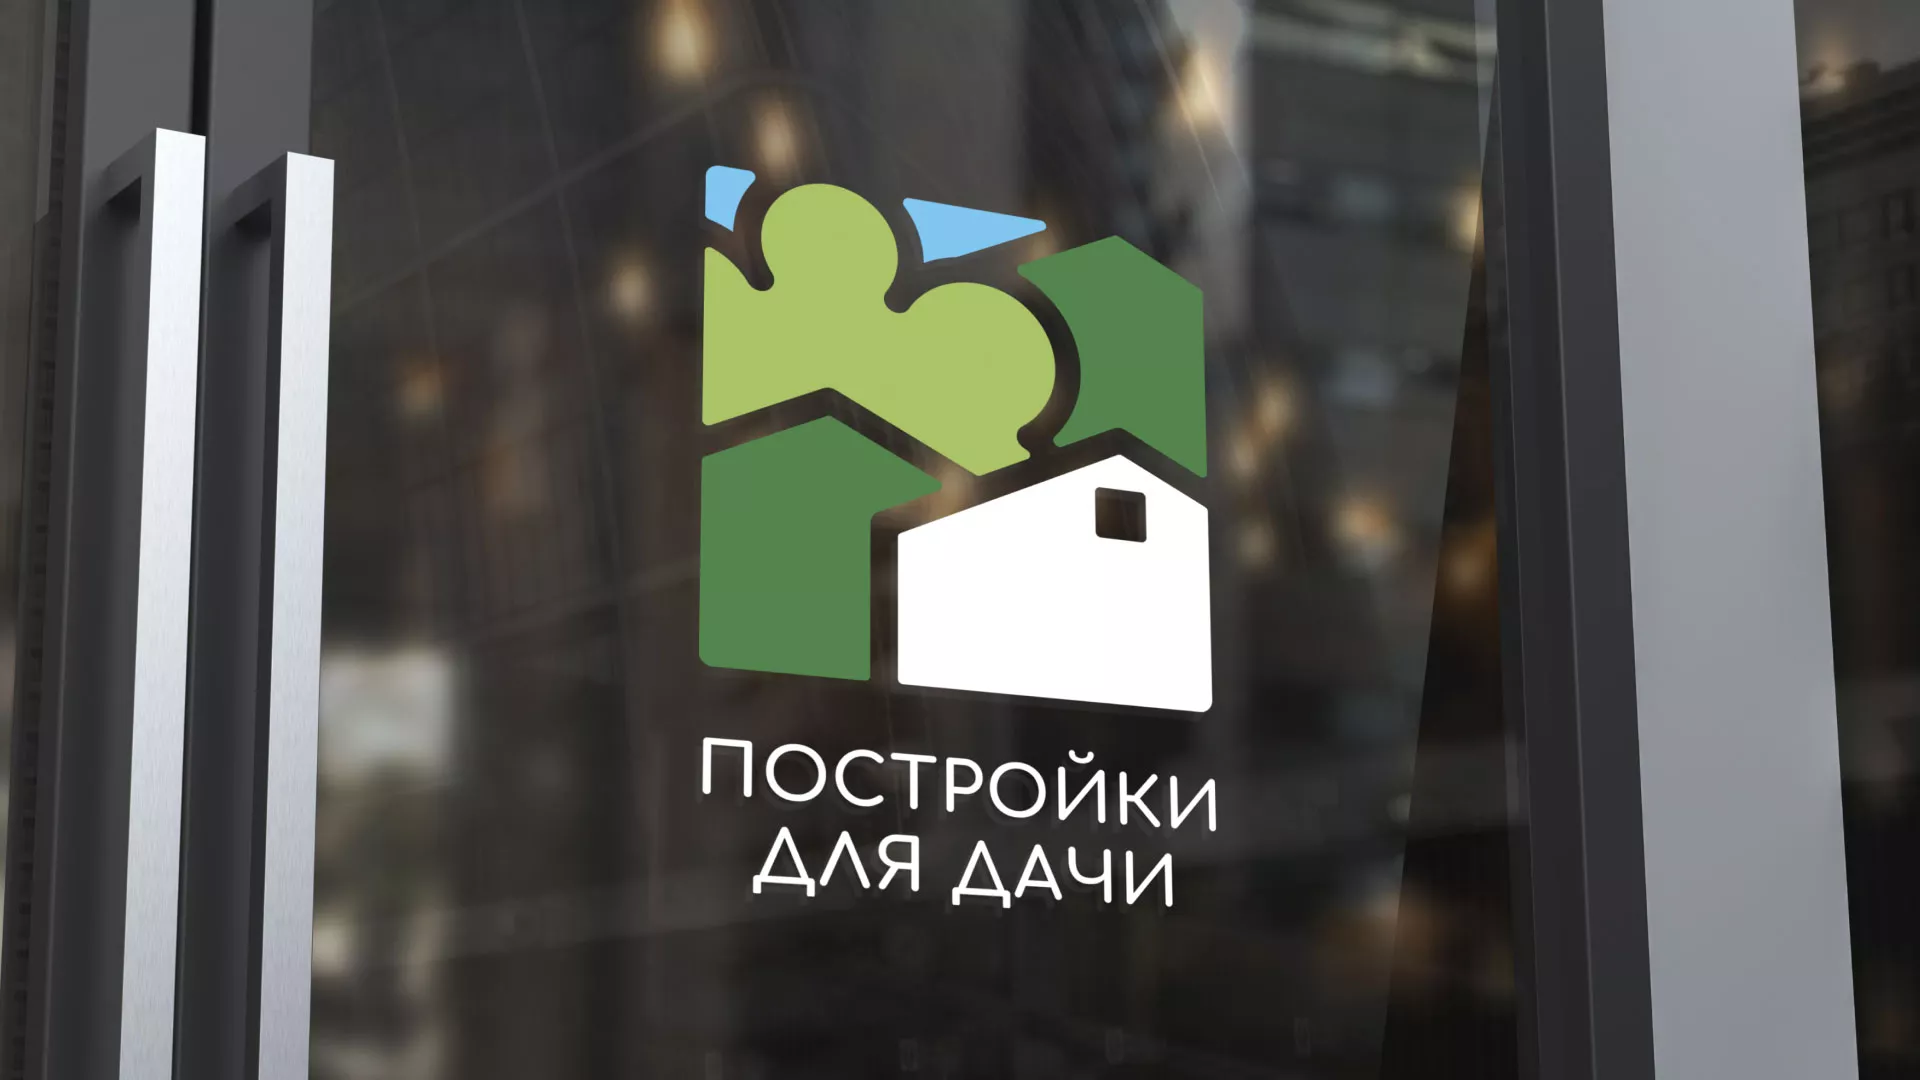 Разработка логотипа в Мариинске для компании «Постройки для дачи»